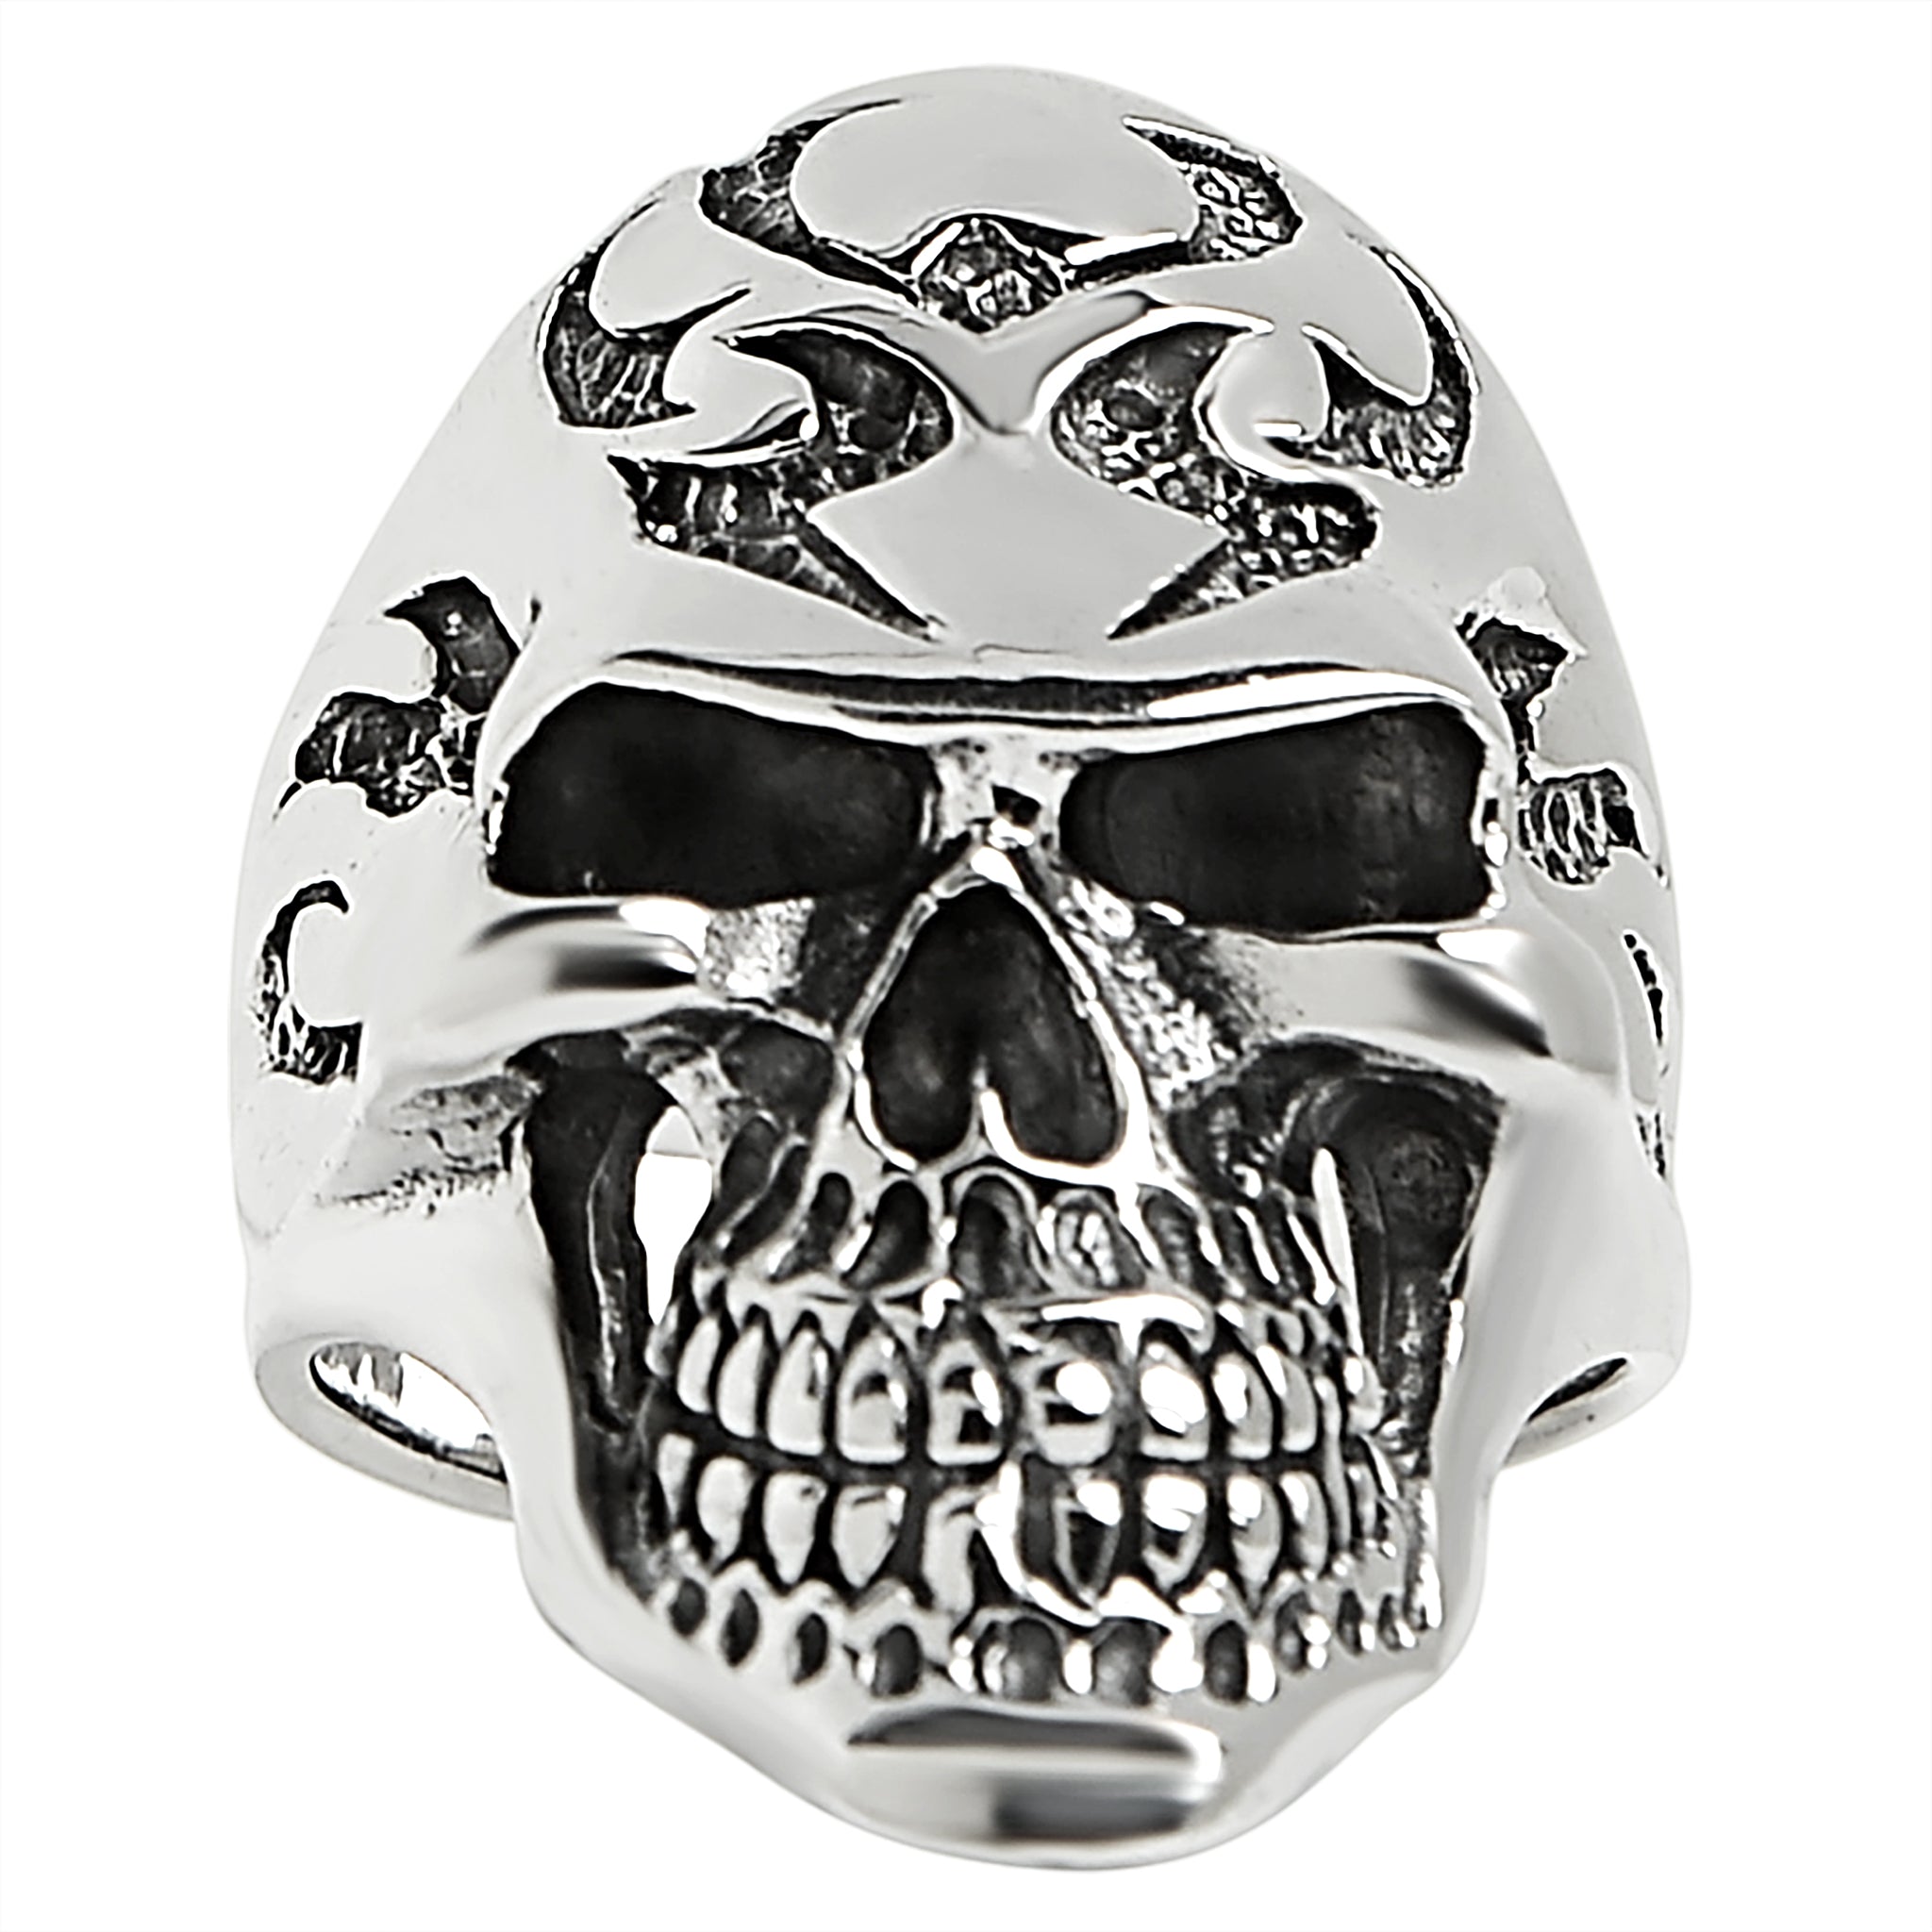 Sterling Silver Flaming Skull Ring / SSR0026-sterling silver pendant- .925 sterling silver pendant- Black Friday Gift- silver pendant- necklace pendant